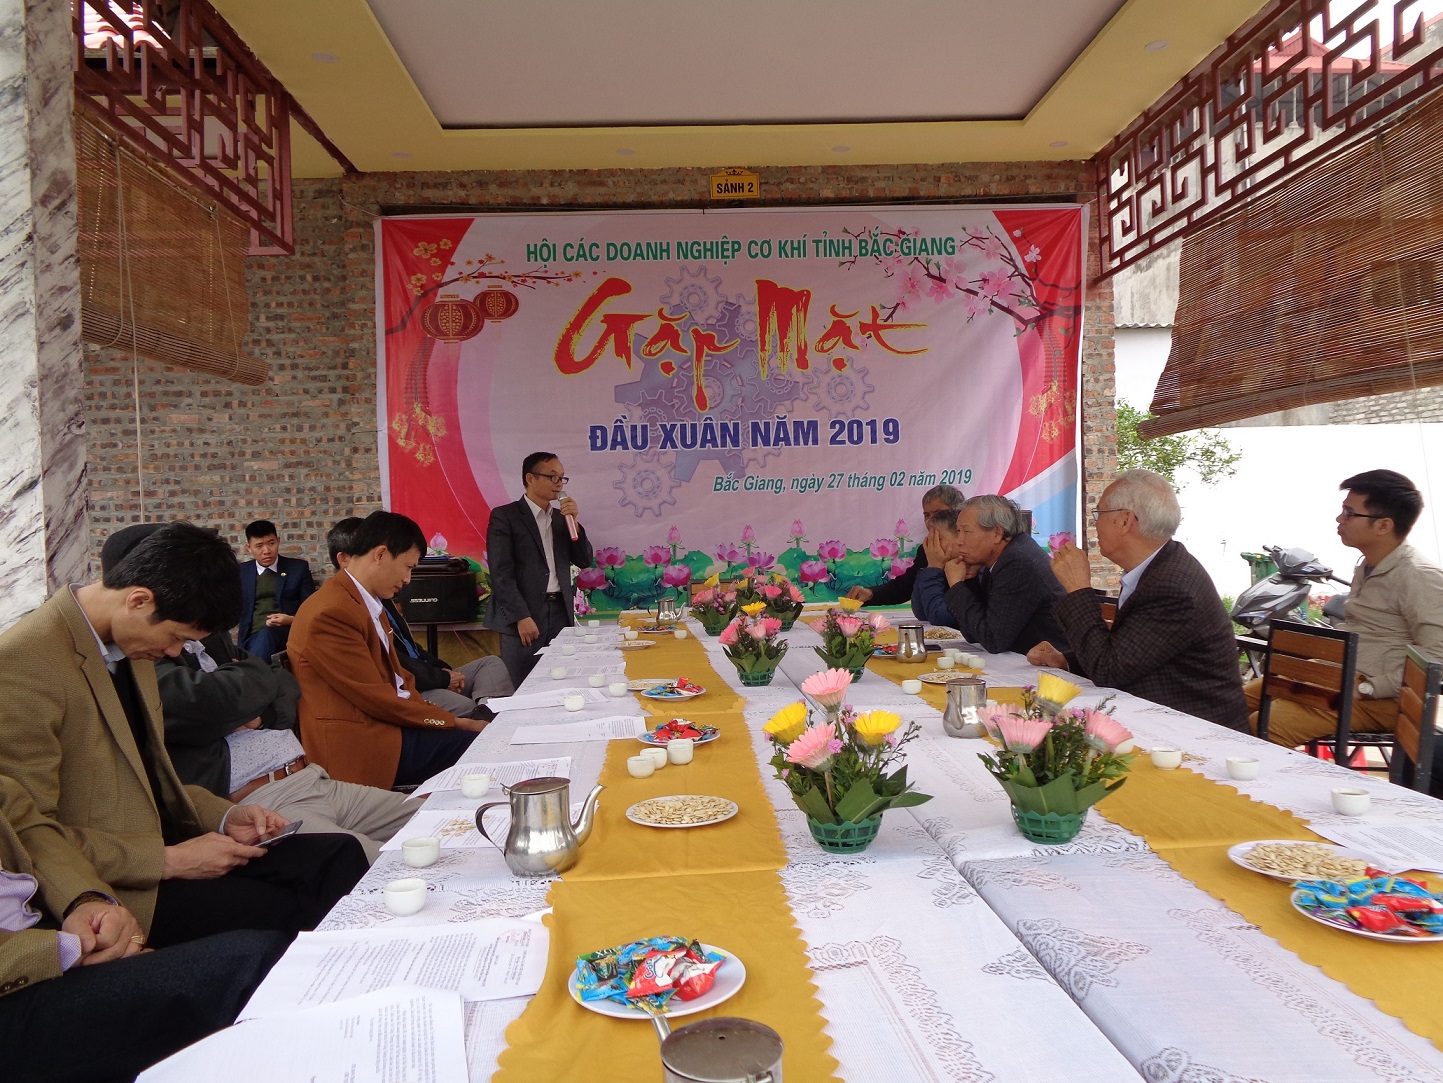 Hội các doanh nghiệp cơ khí tỉnh Bắc Giang tổ chức gặp mặt đầu xuân năm 2019